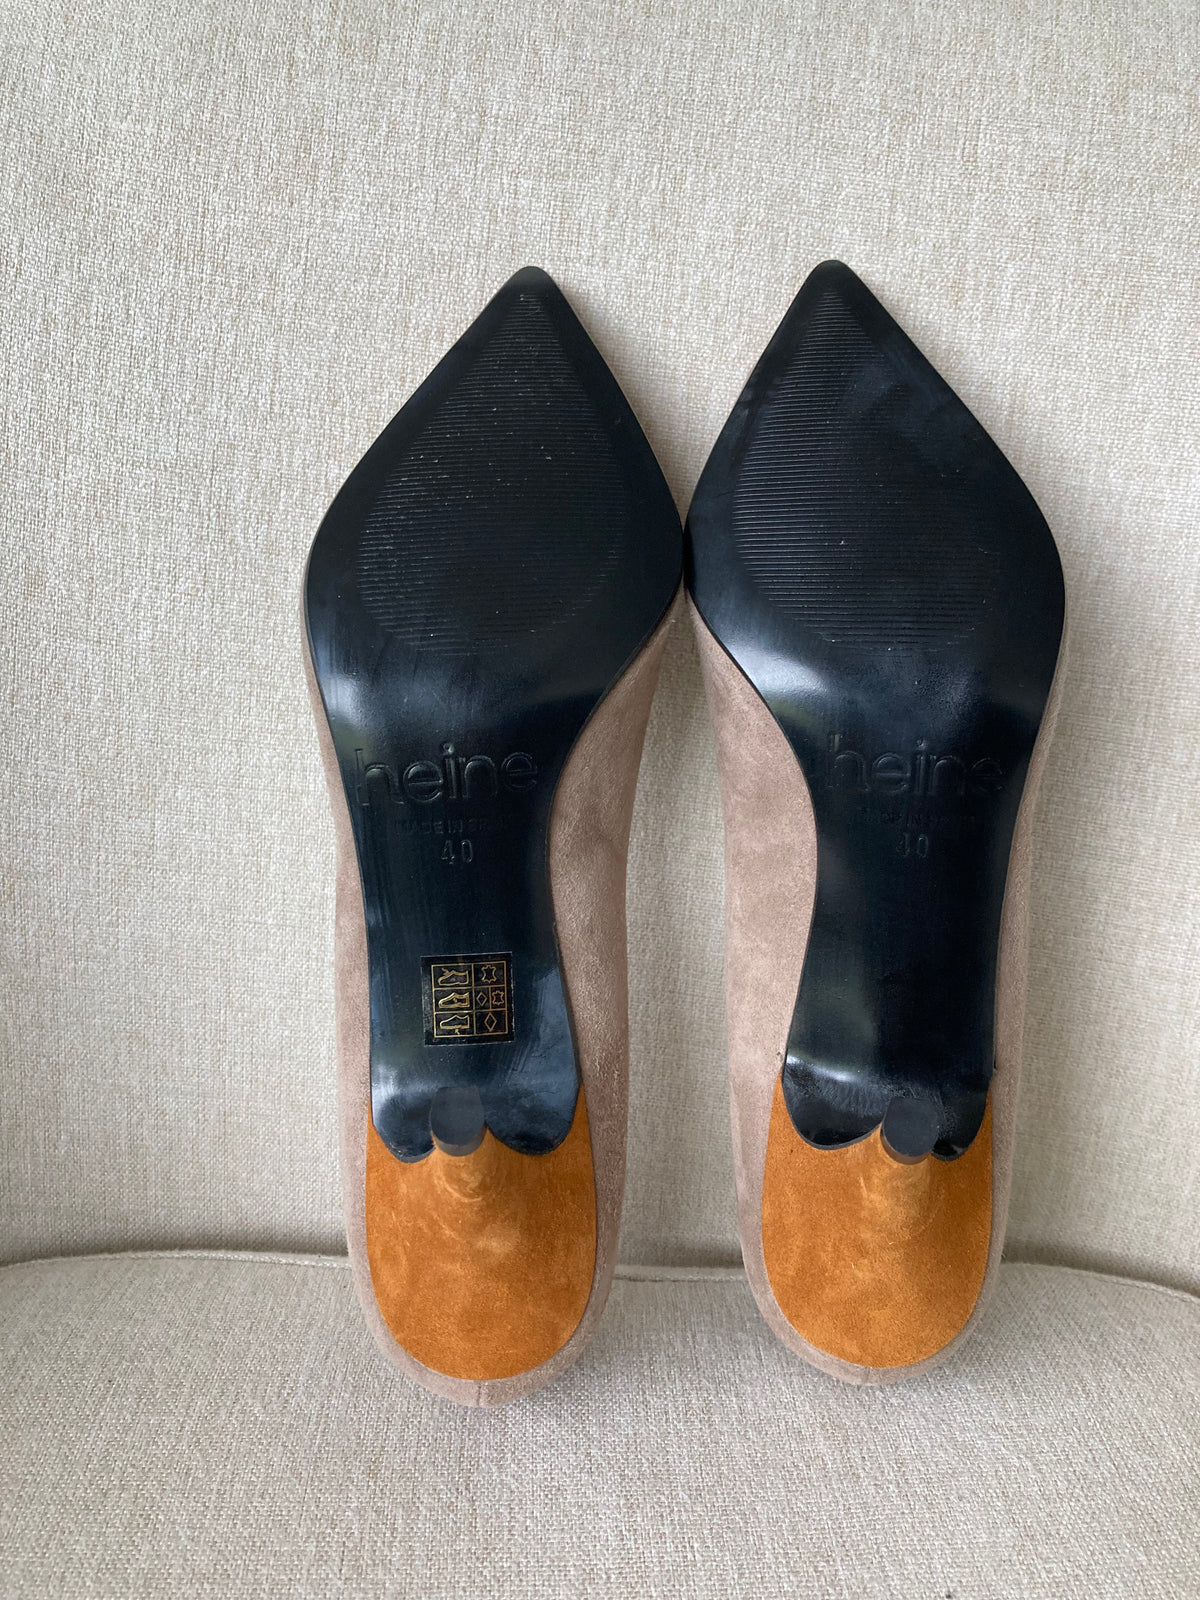 Statement handmade high heels by Heine size 6.5